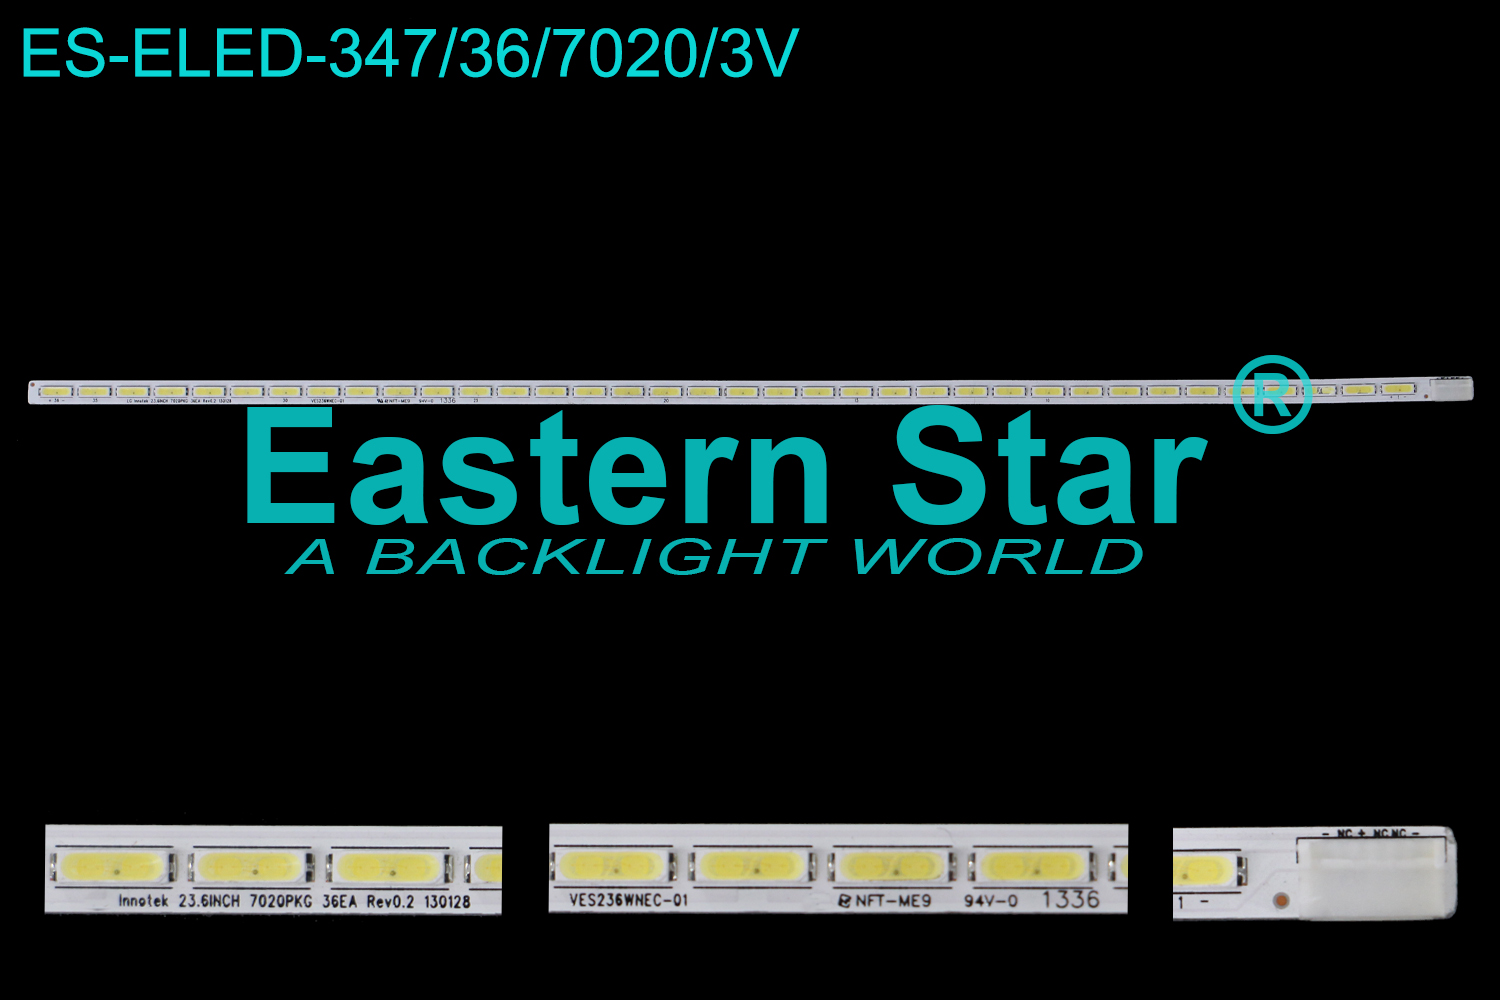 ES-ELED-347 ELED/EDGE TV backlight use for 24'' Lg 24PH5030 LG Innotek 23.6INCH 7020PKG 36EA Rev0.2  130128  NFT-ME9 VES236WNEC-01 LED STRIPS(1)